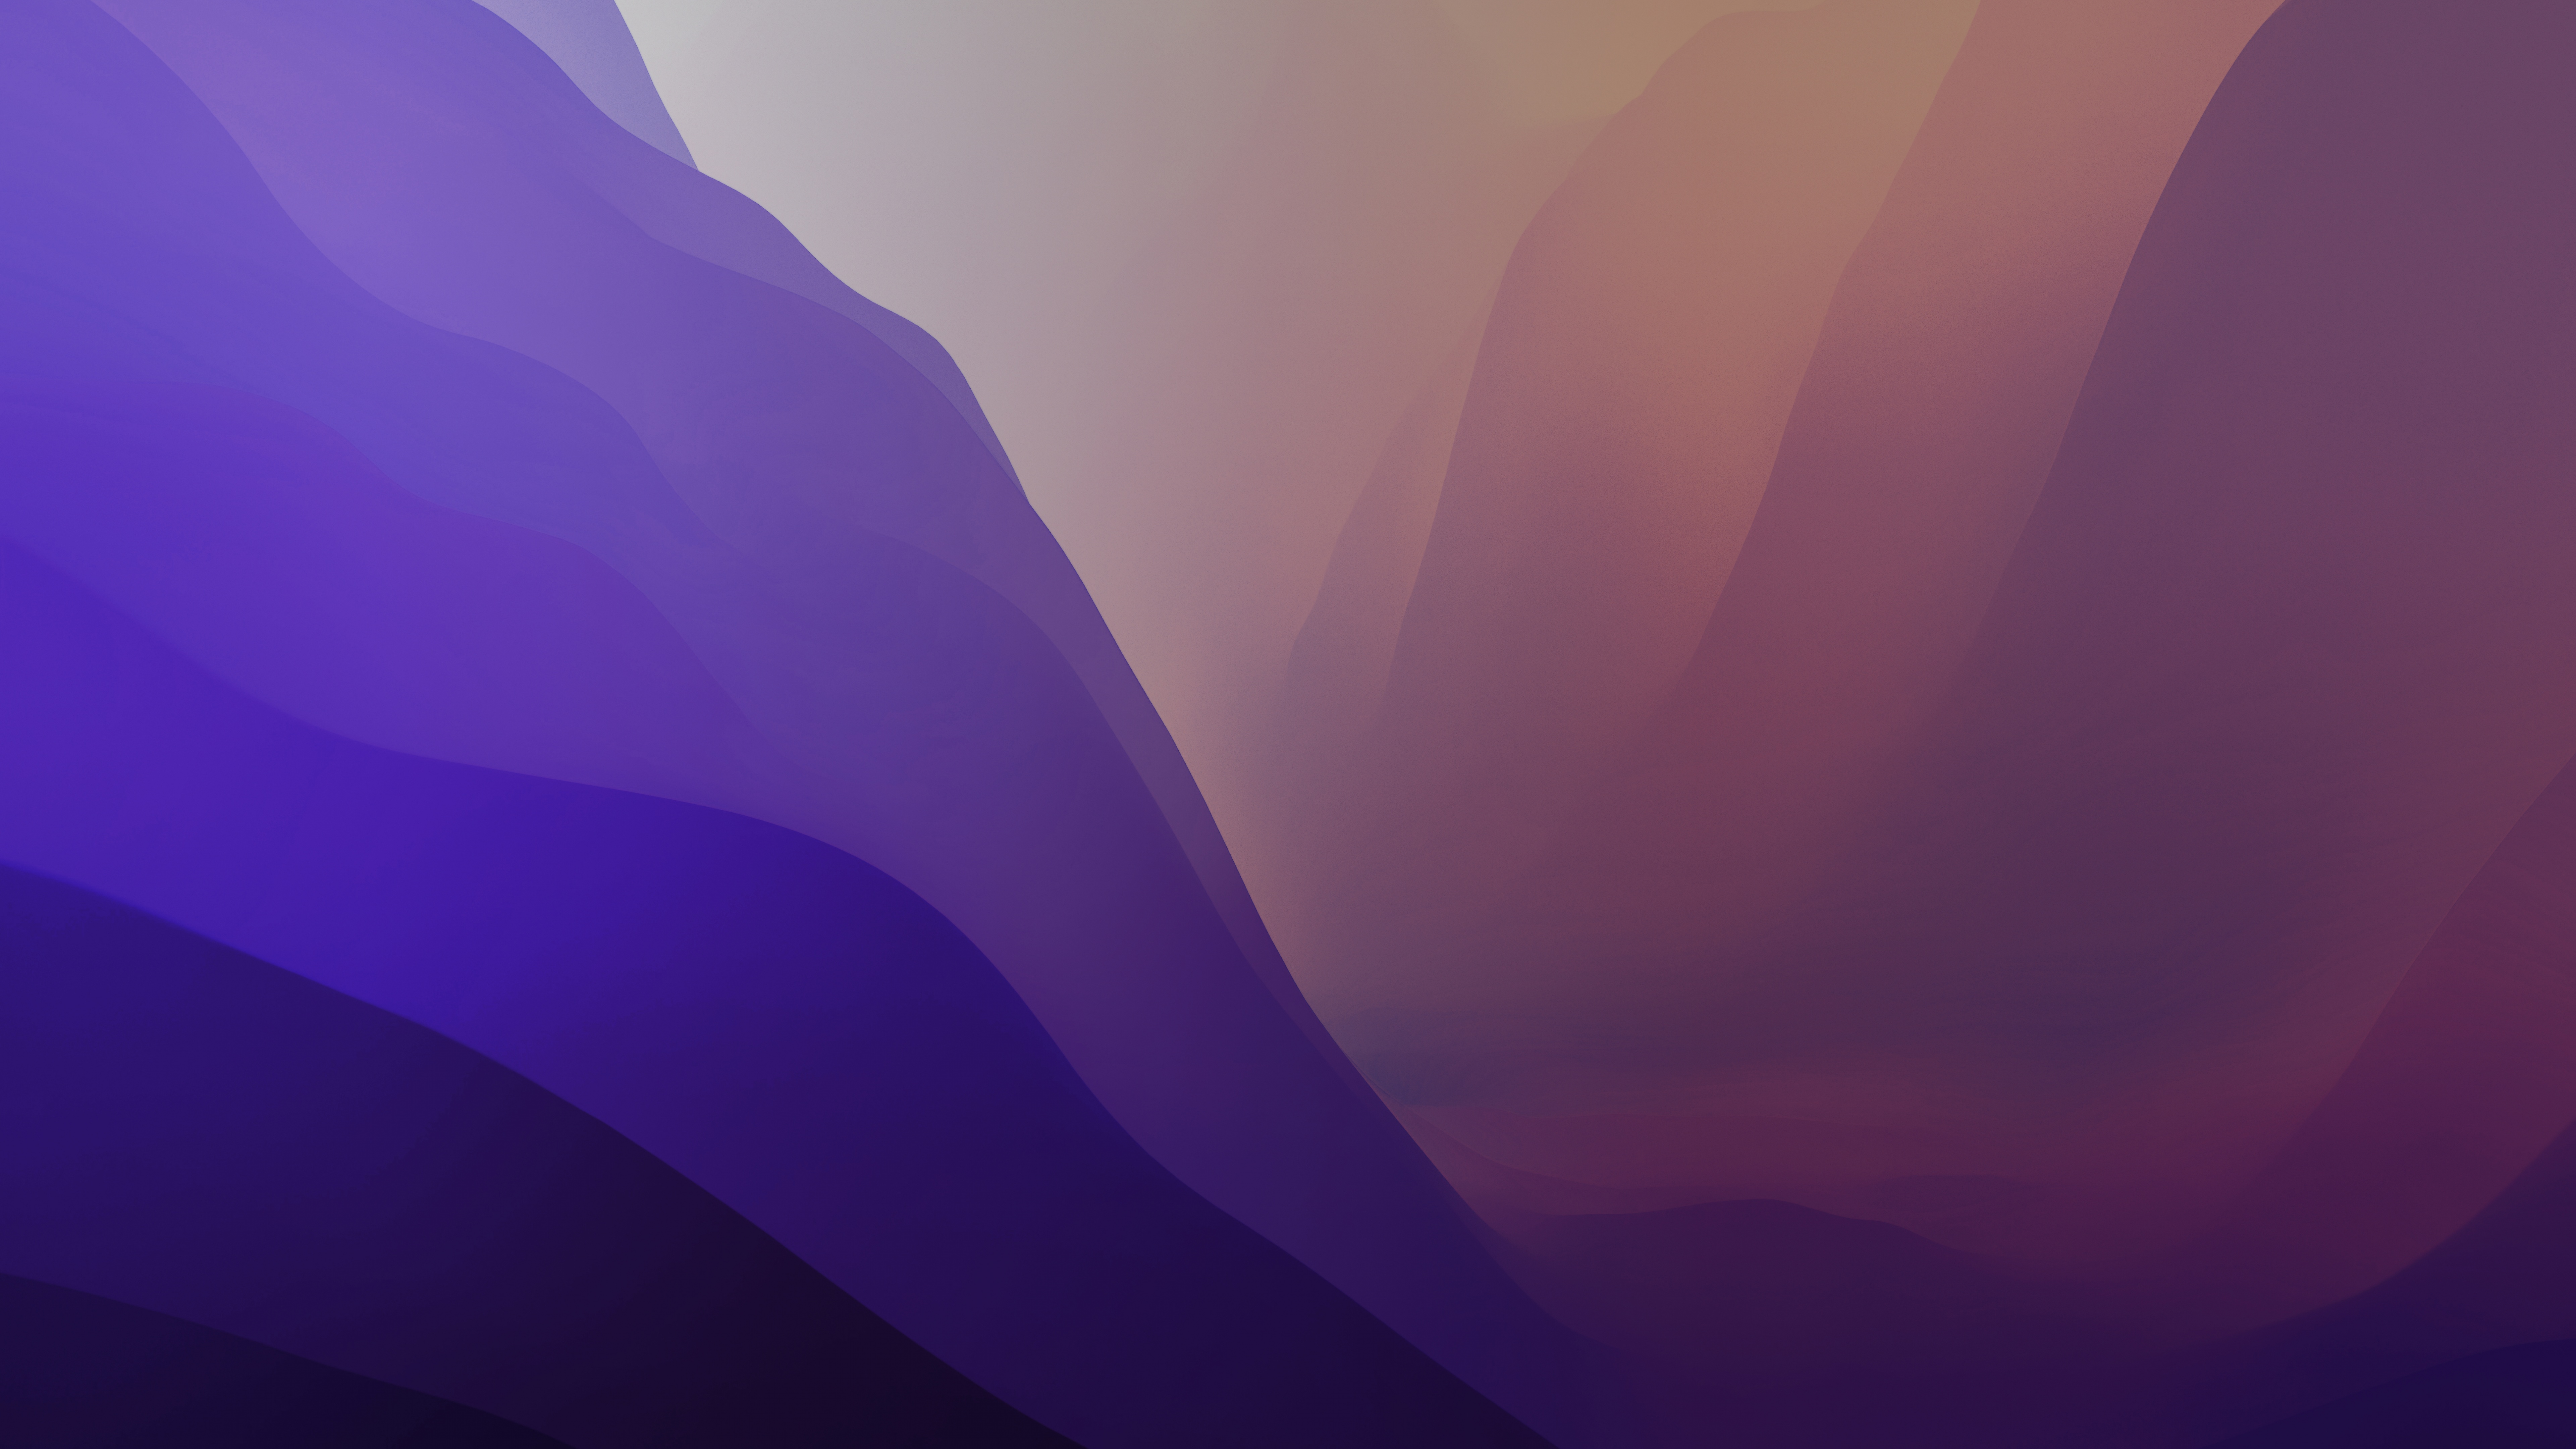 Hãy tải ngay hình nền MacOS Monterey Wallpaper 4K màu tím tuyệt đẹp này để trang trí cho máy tính của bạn. Với chất lượng hình ảnh sắc nét, bạn sẽ không thể rời mắt khỏi màn hình của mình.